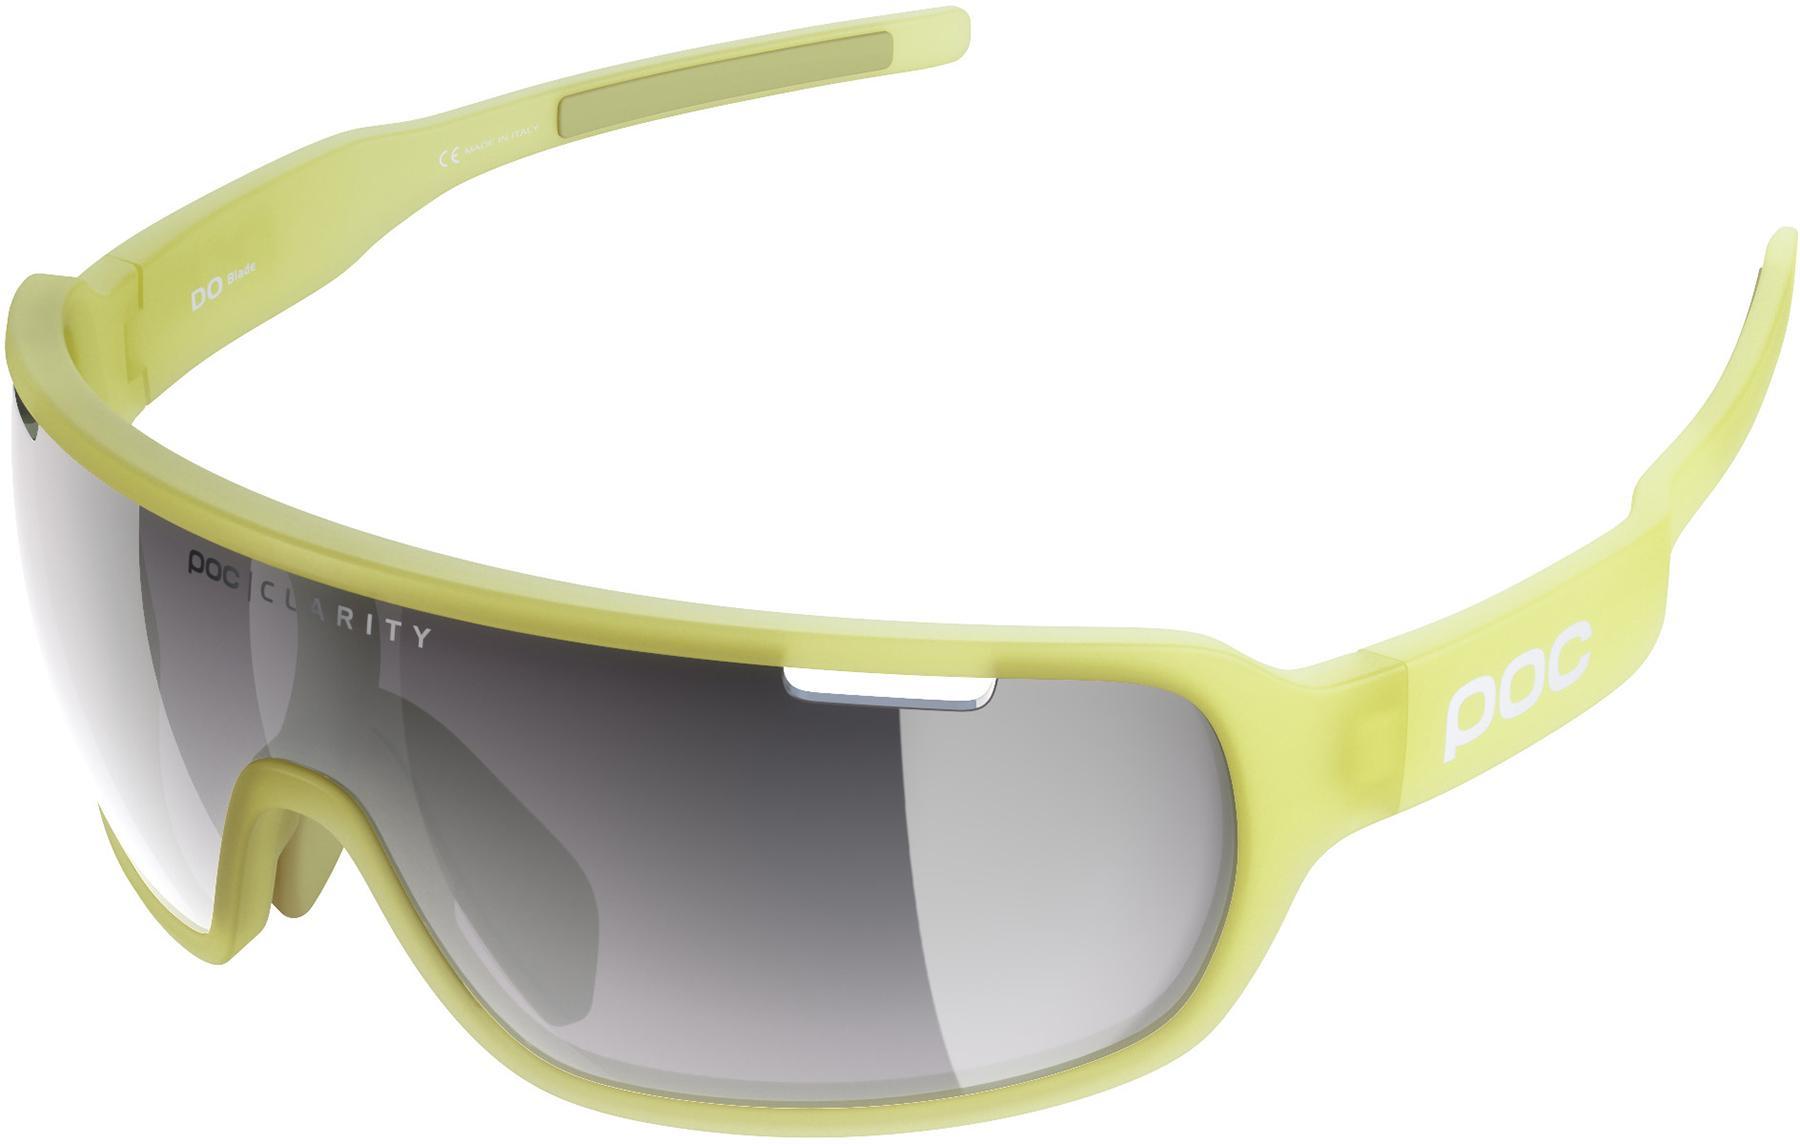 Poc Do Blade Clarity Sunglasses - Lemon Calcite Translucent